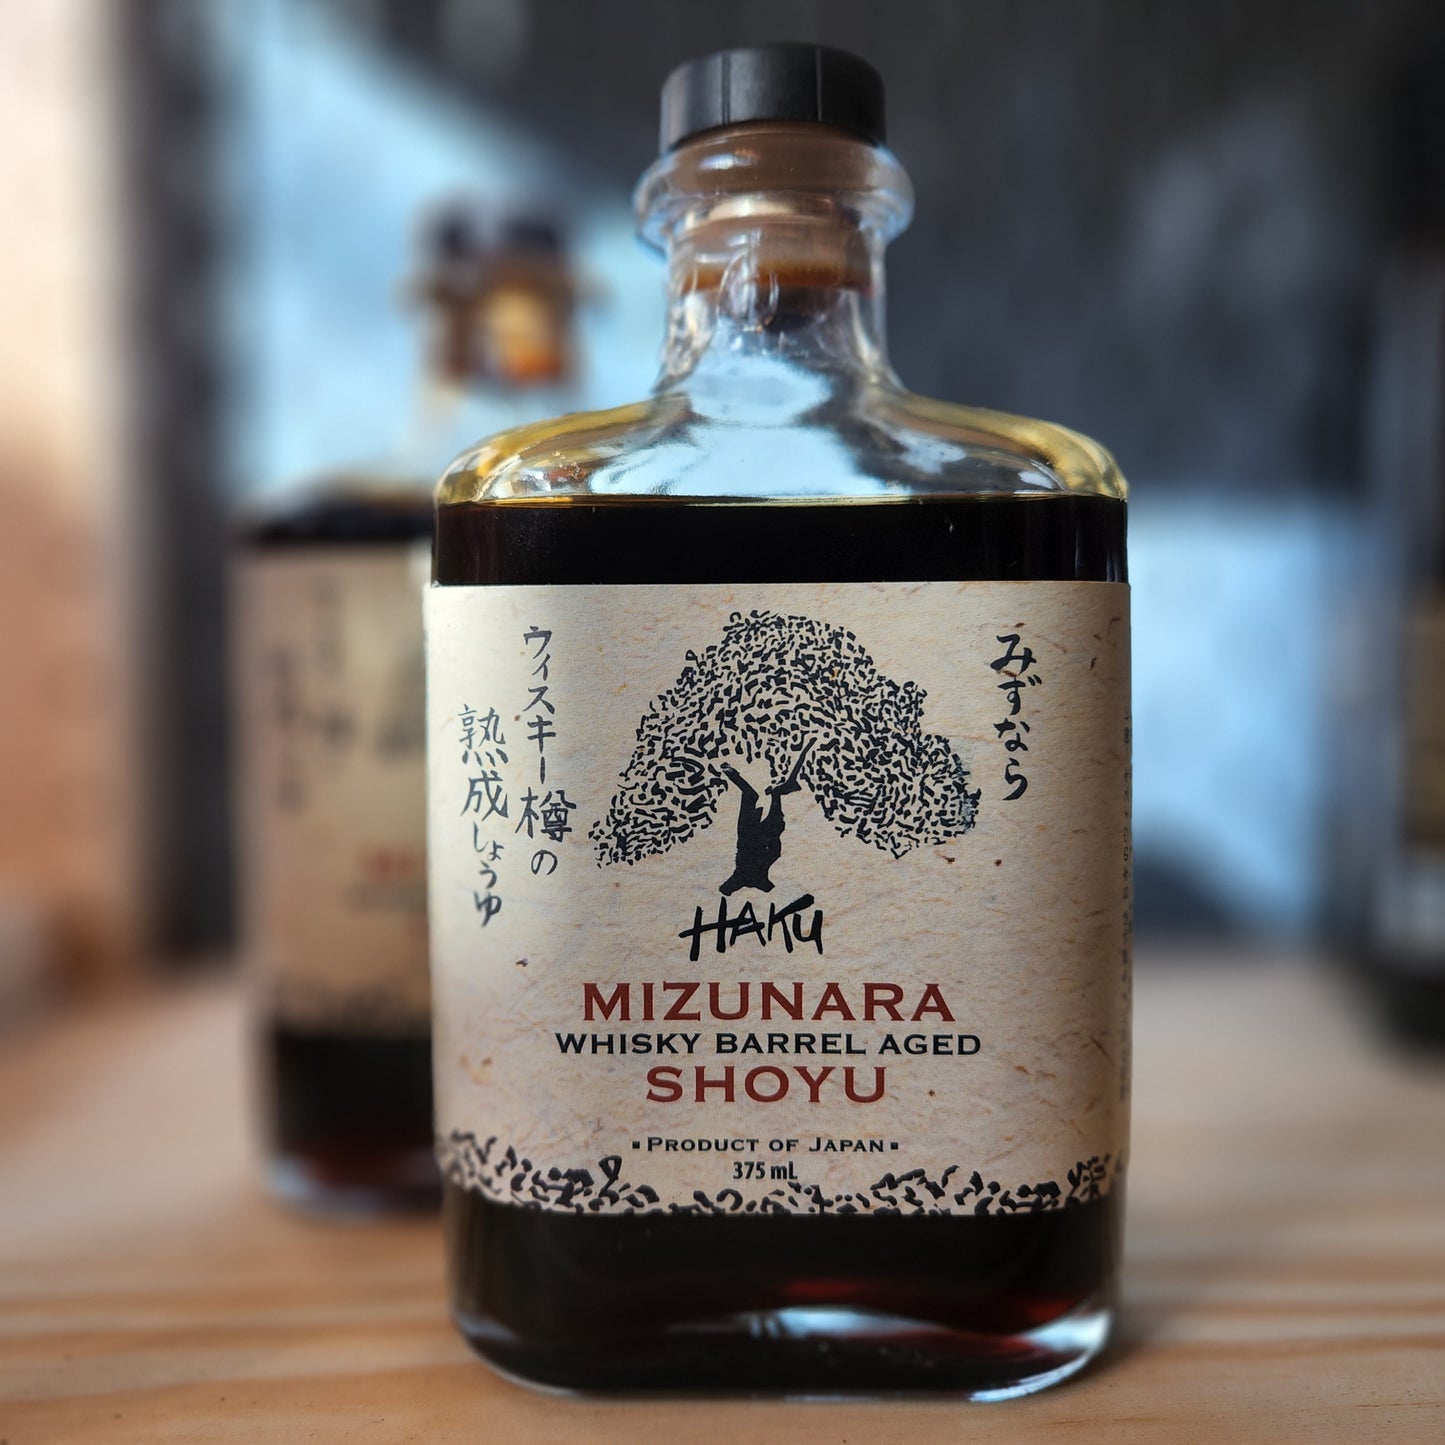 Haku Mizunara Whisky Barrel Aged Shoyu